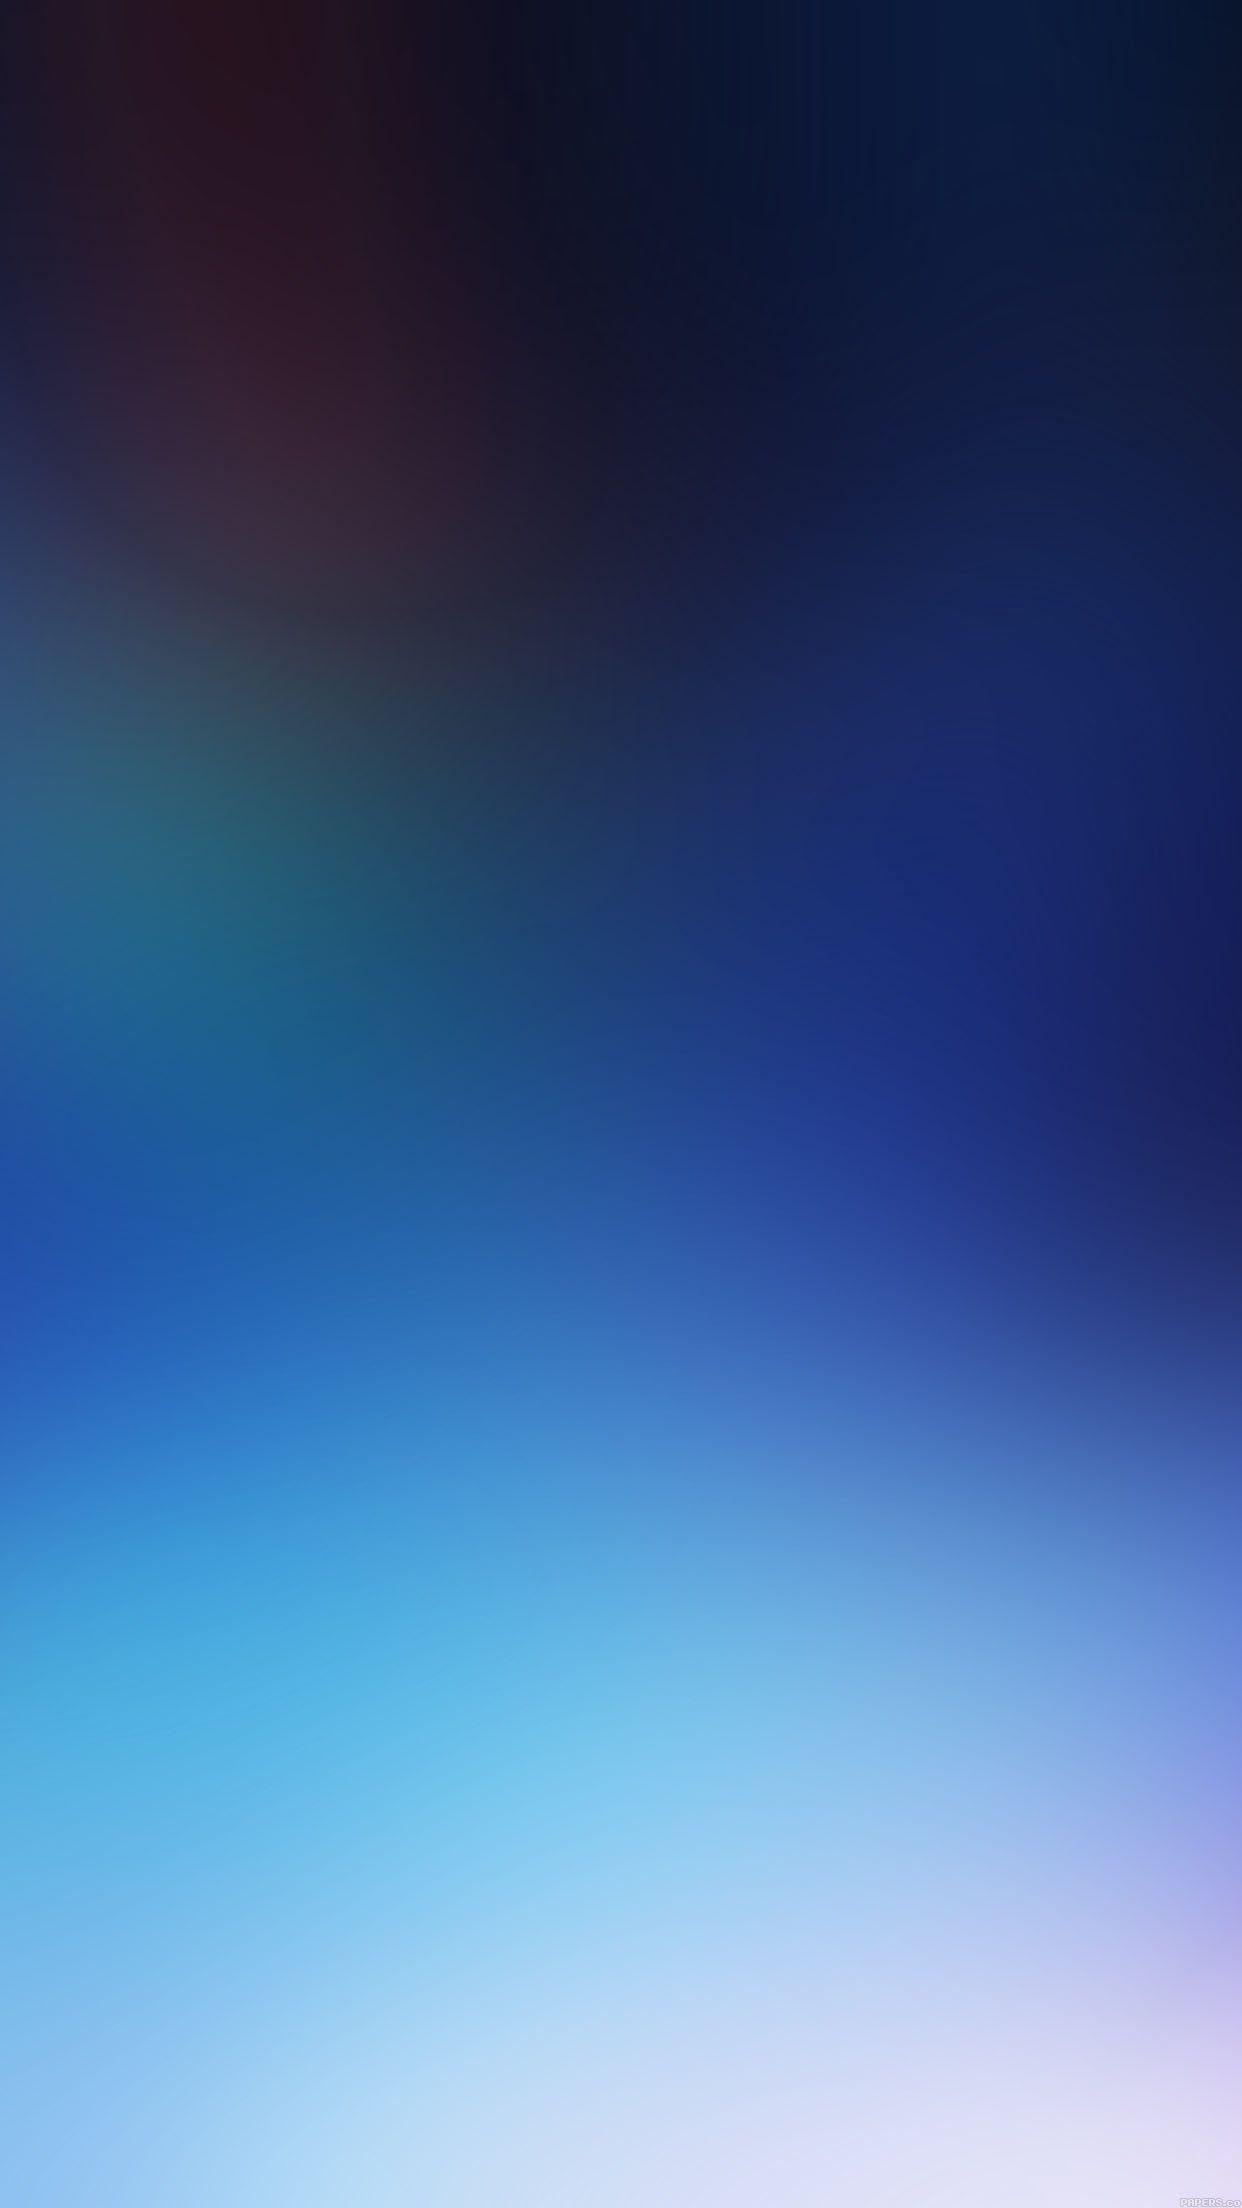 1242x2208 Giấy tờ iPhone - hình nền thiên nhiên màu xanh dương có mờ